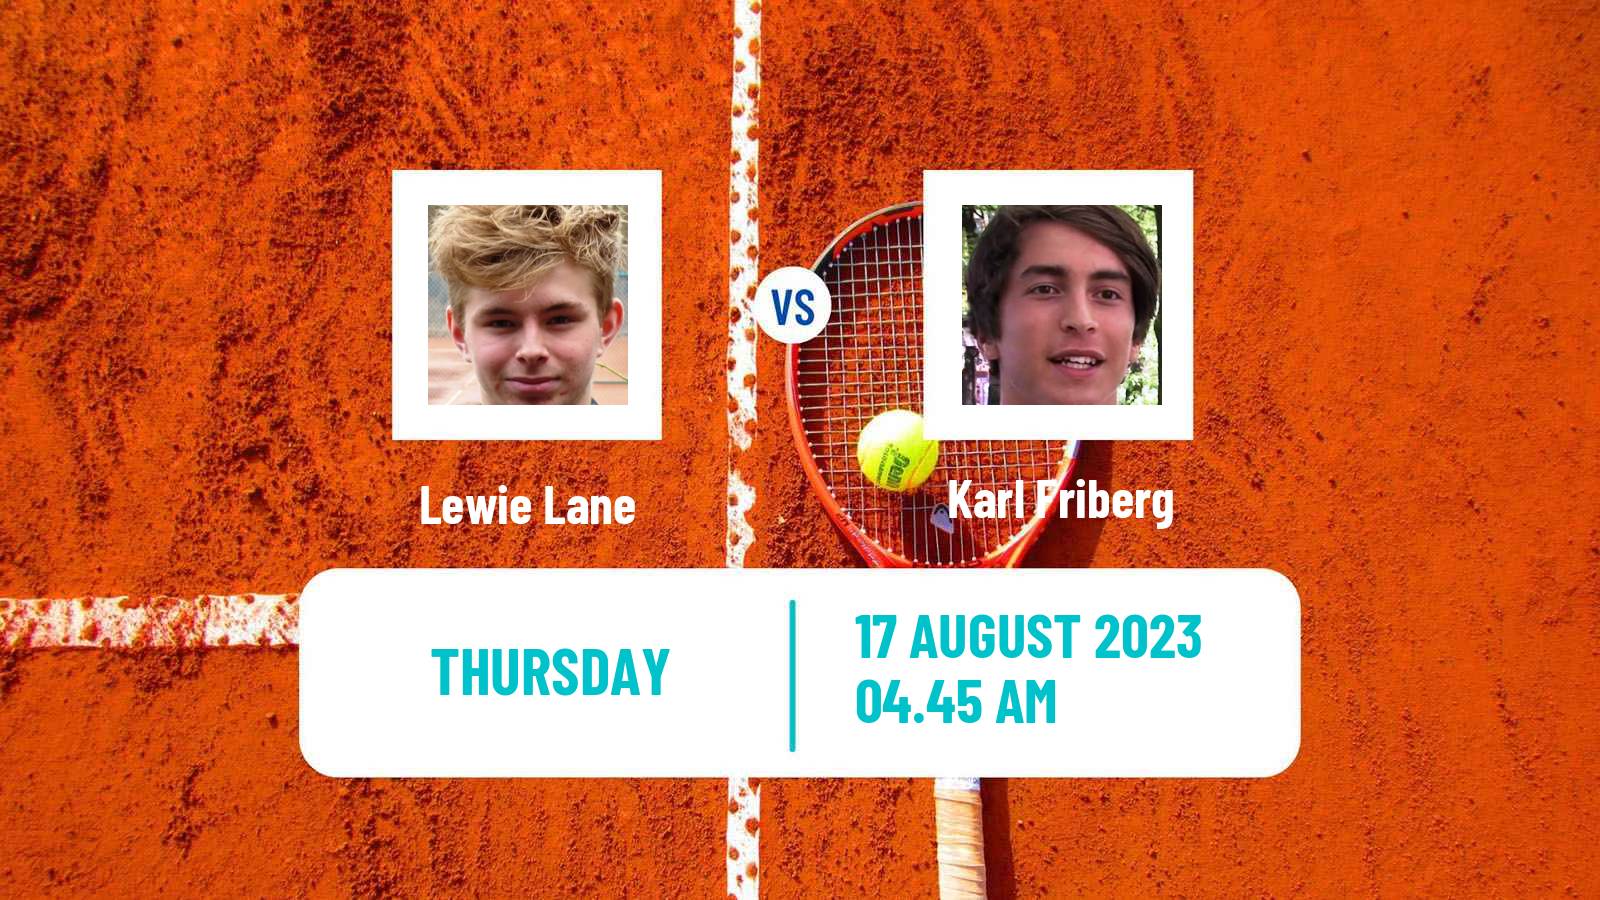 Tennis ITF M25 Ystad Men Lewie Lane - Karl Friberg